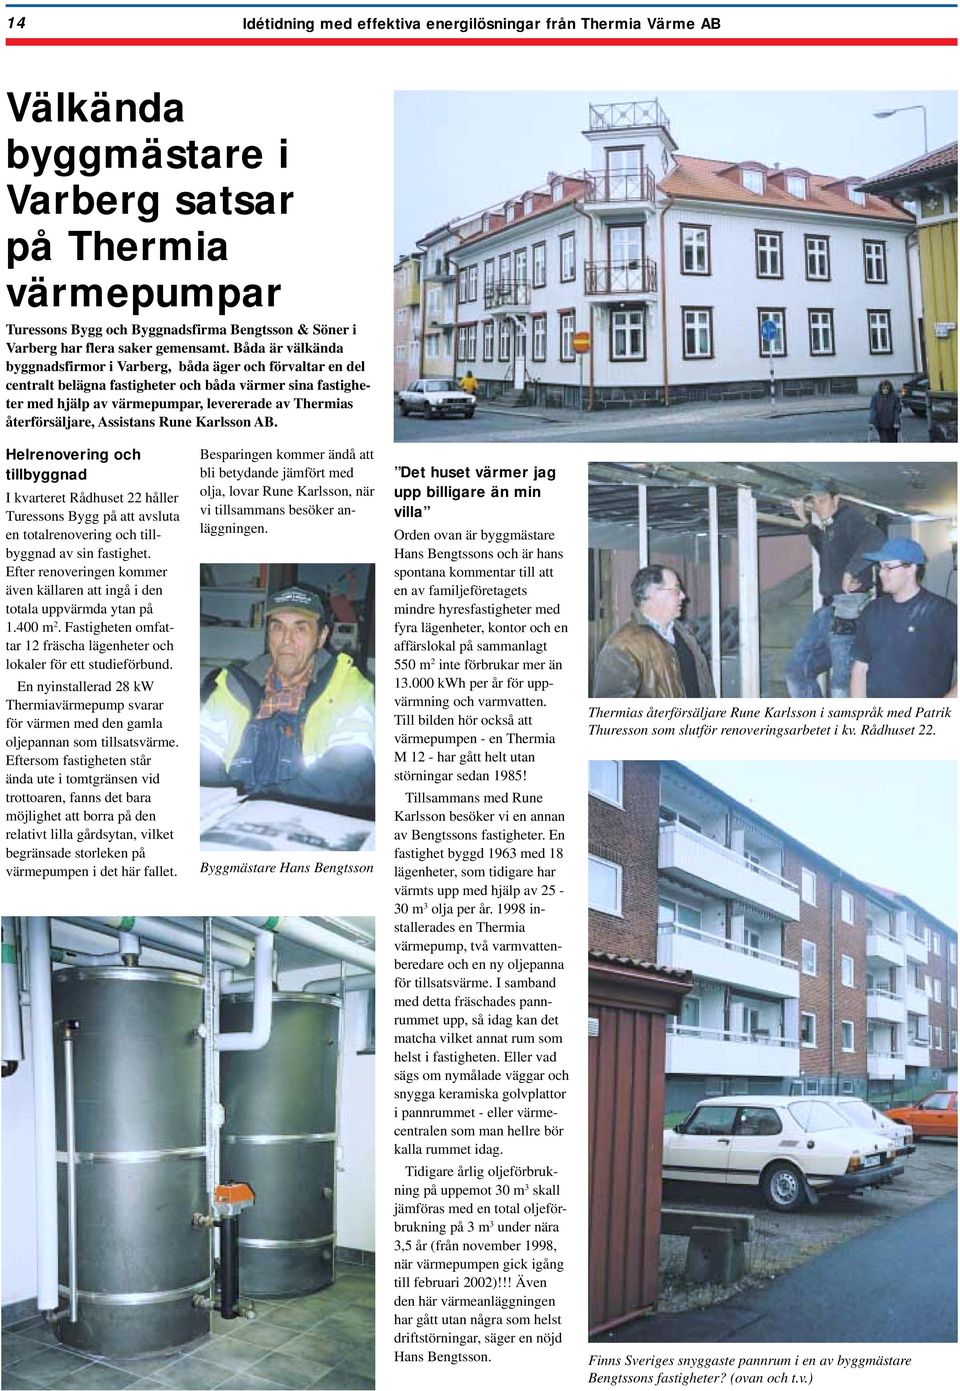 Båda är välkända byggnadsfirmor i Varberg, båda äger och förvaltar en del centralt belägna fastigheter och båda värmer sina fastigheter med hjälp av värmepumpar, levererade av Thermias